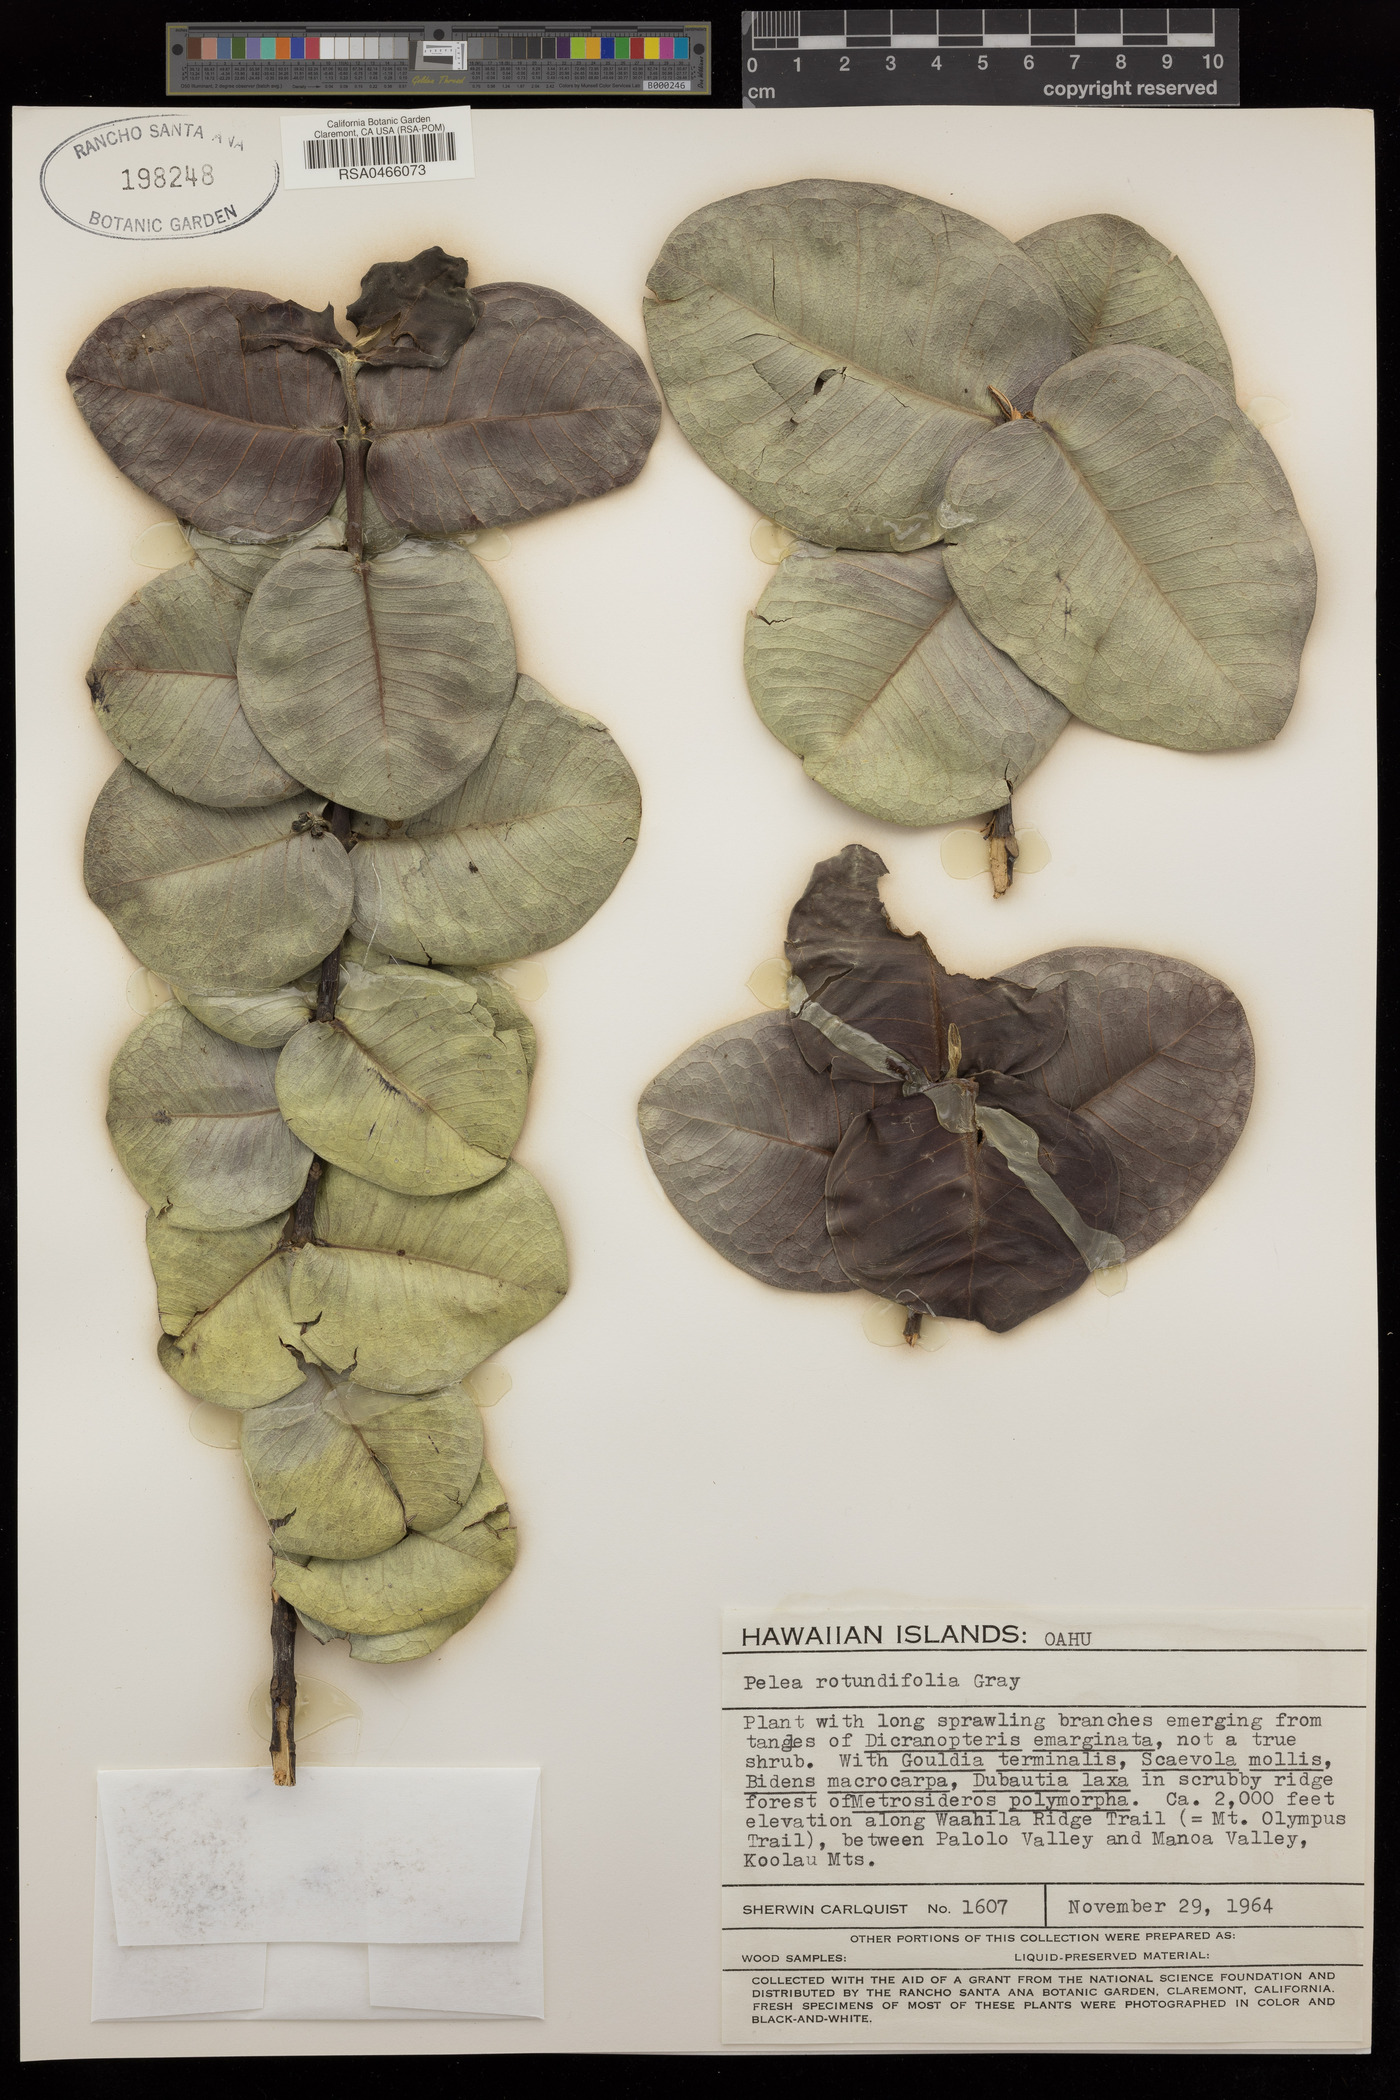 Pelea rotundifolia image